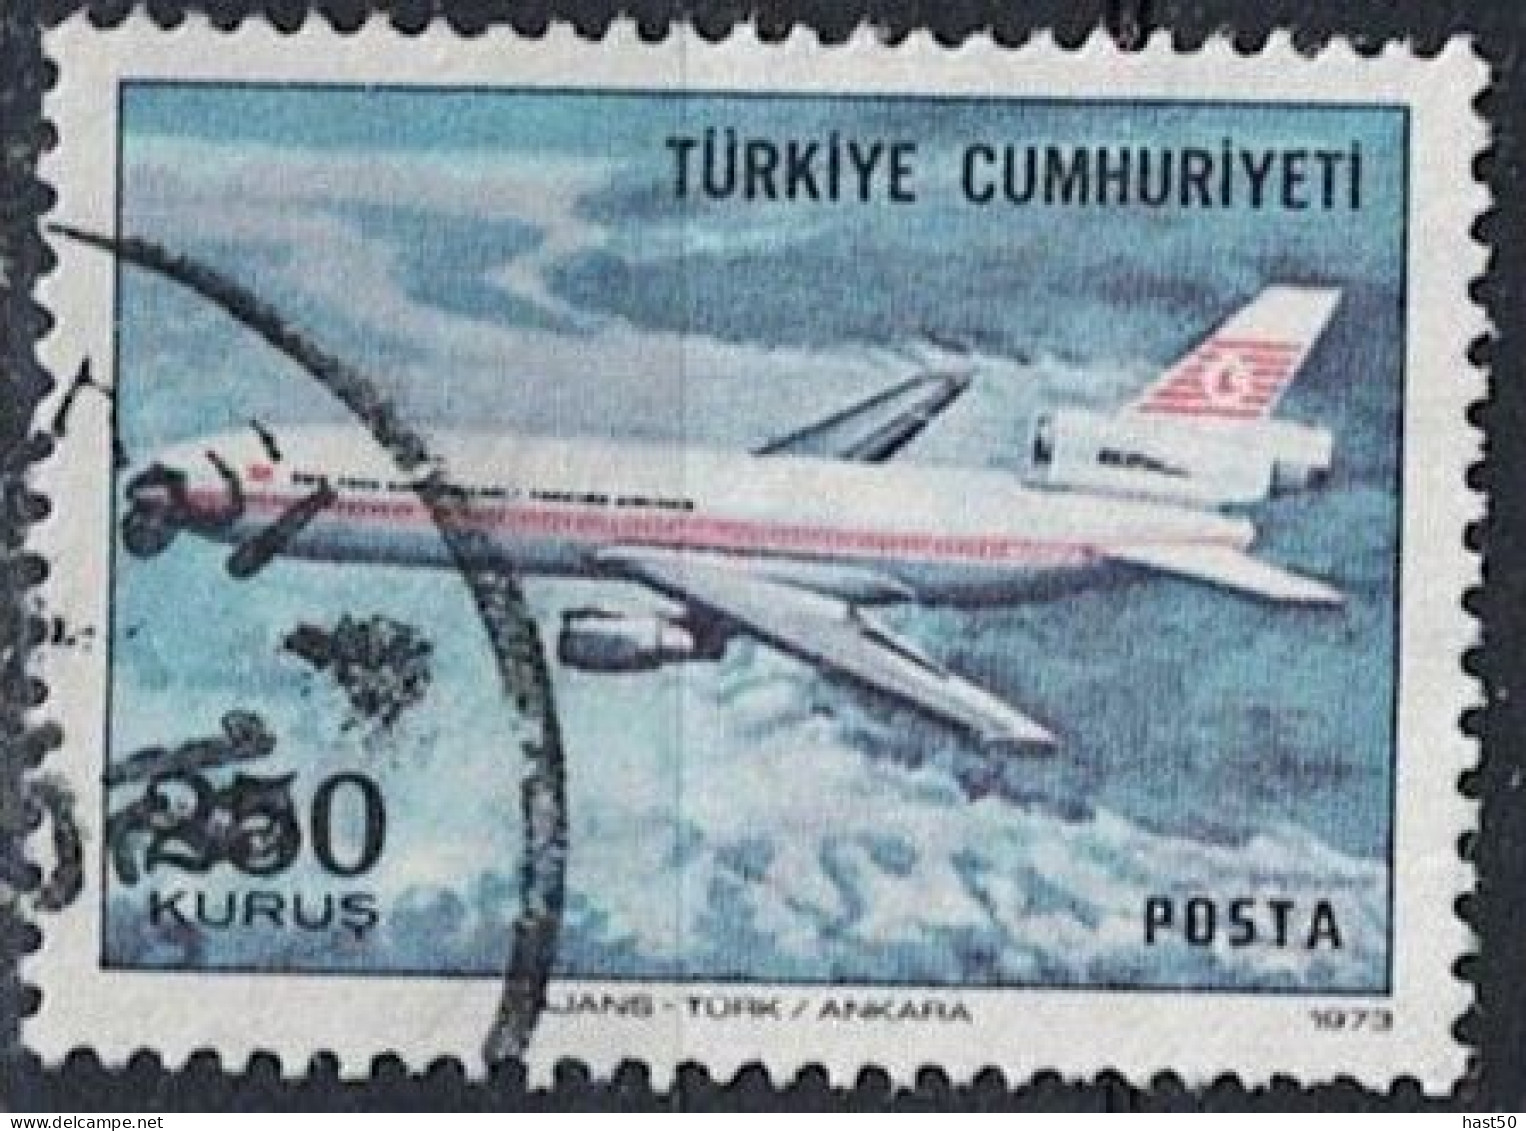 Türkei Turkey Turquie - Douglas DC-10 (MiNr: 2318) 1973 - Gest Used Obl - Usati